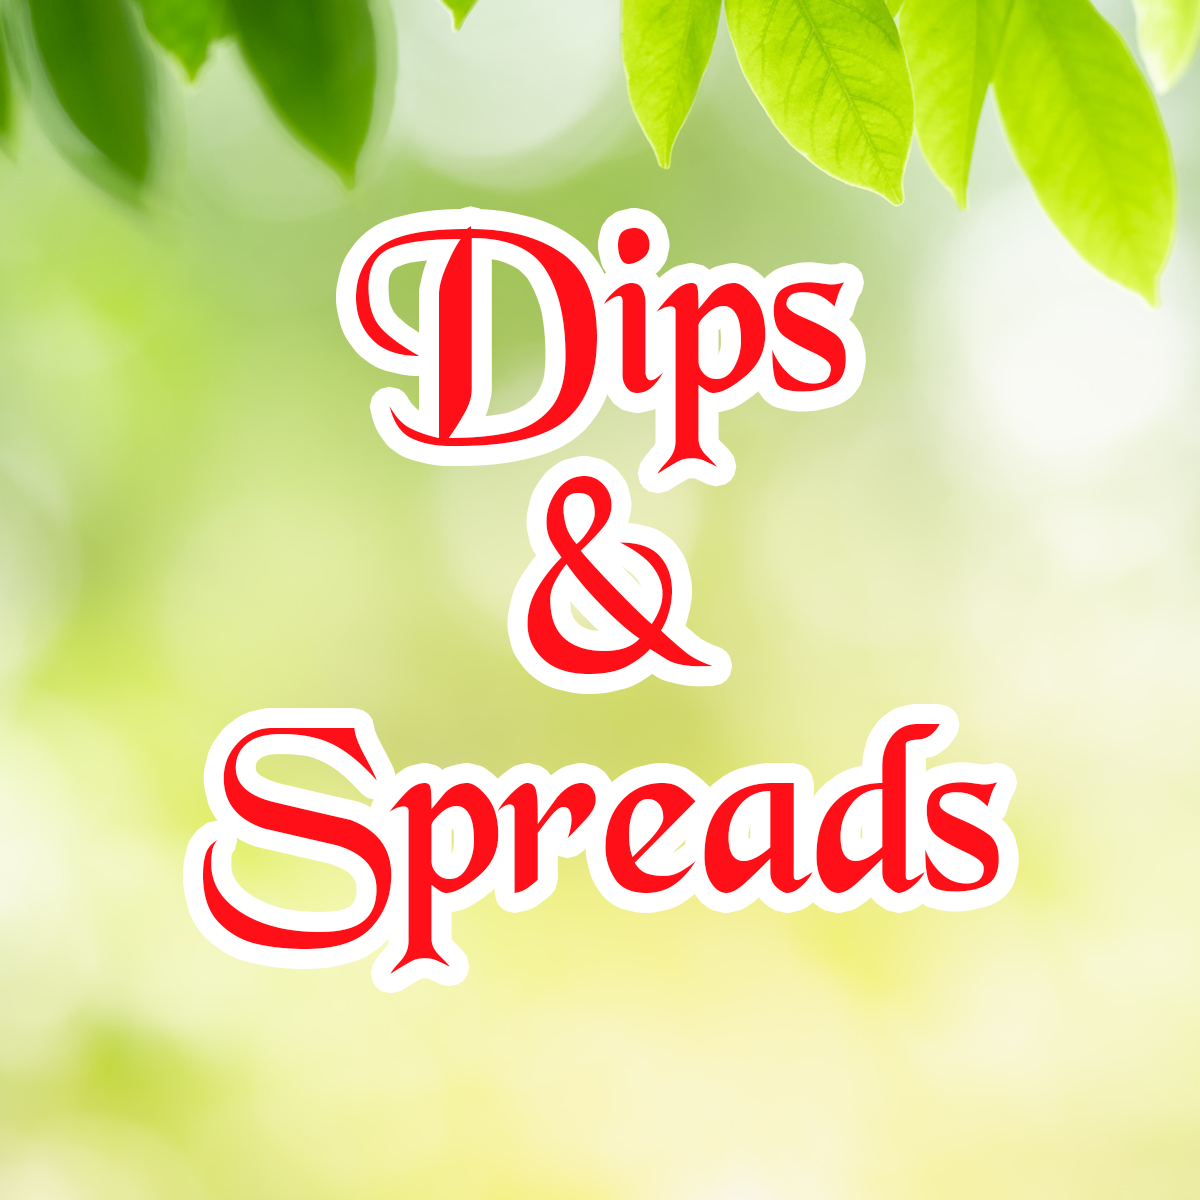 Dips & Spread